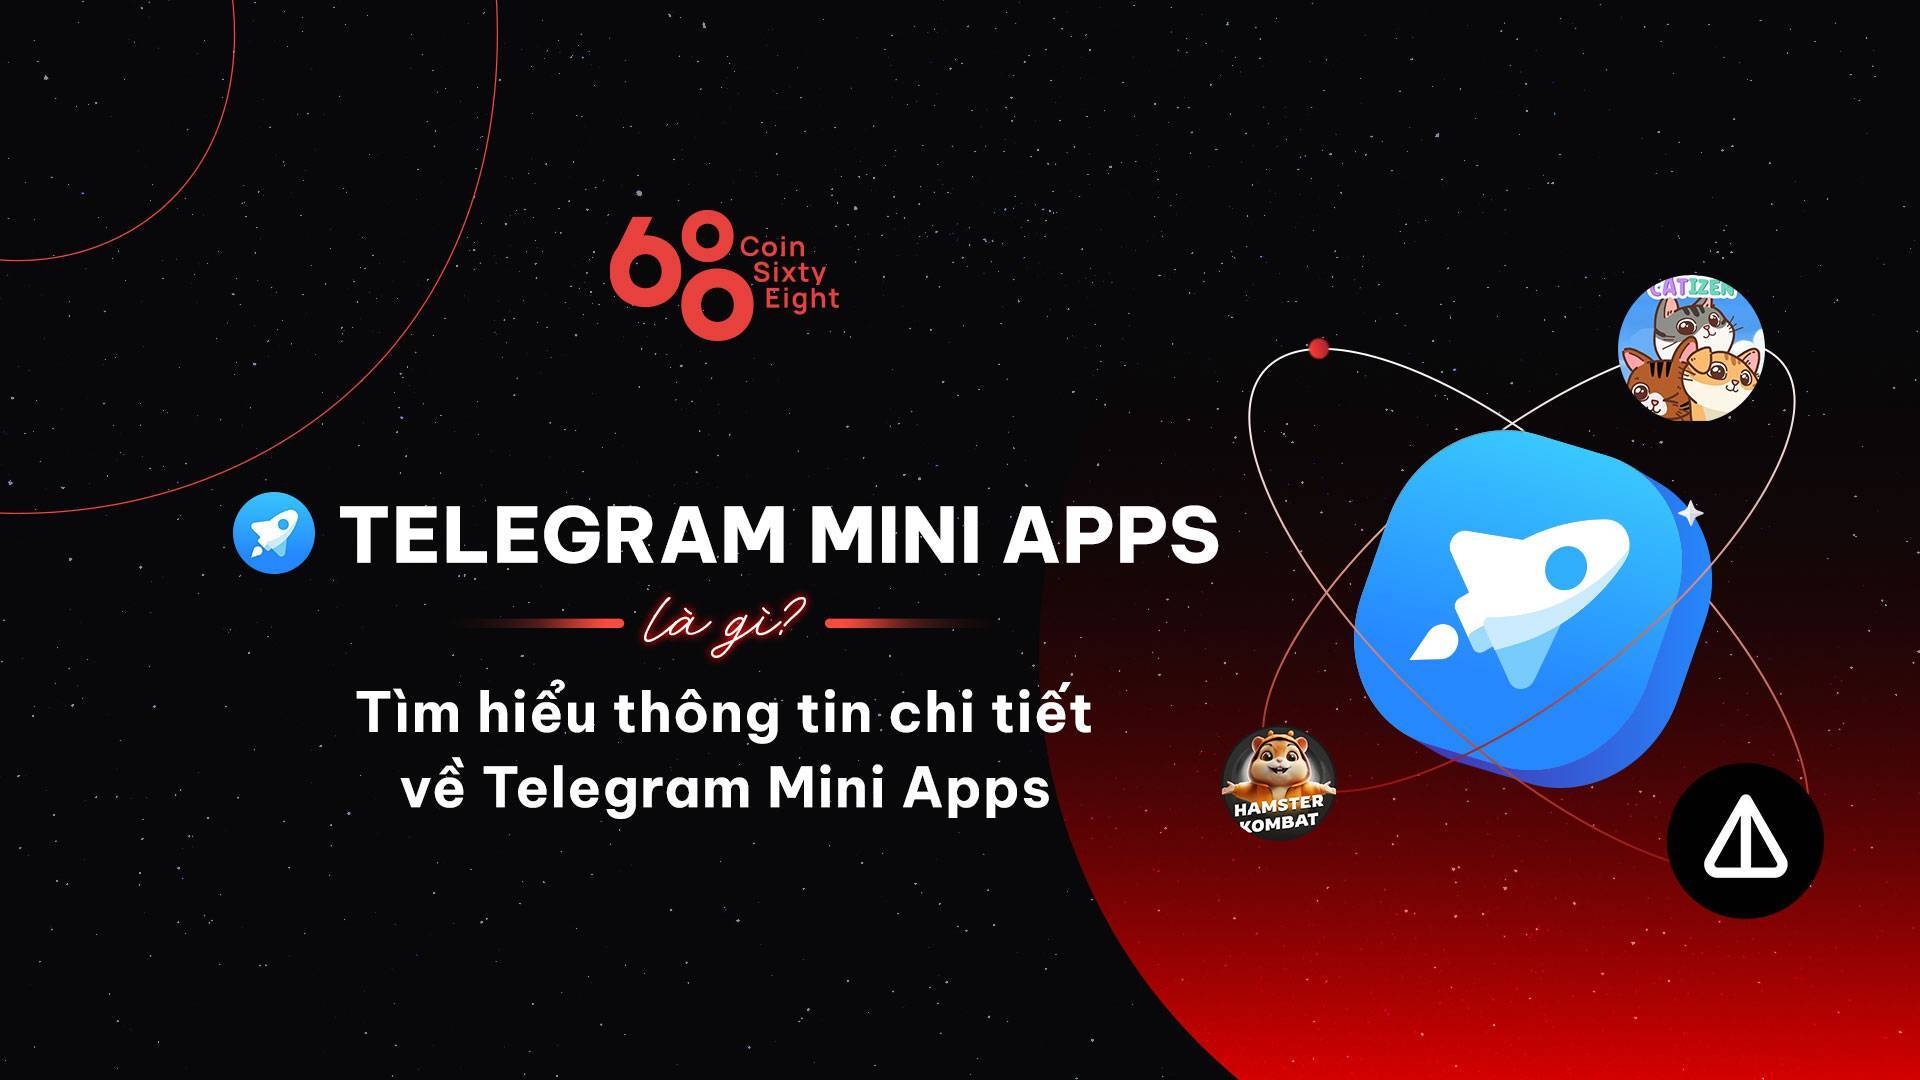 Telegram Mini Apps Là Gì Tìm Hiểu Thông Tin Chi Tiết Về Telegram Mini Apps